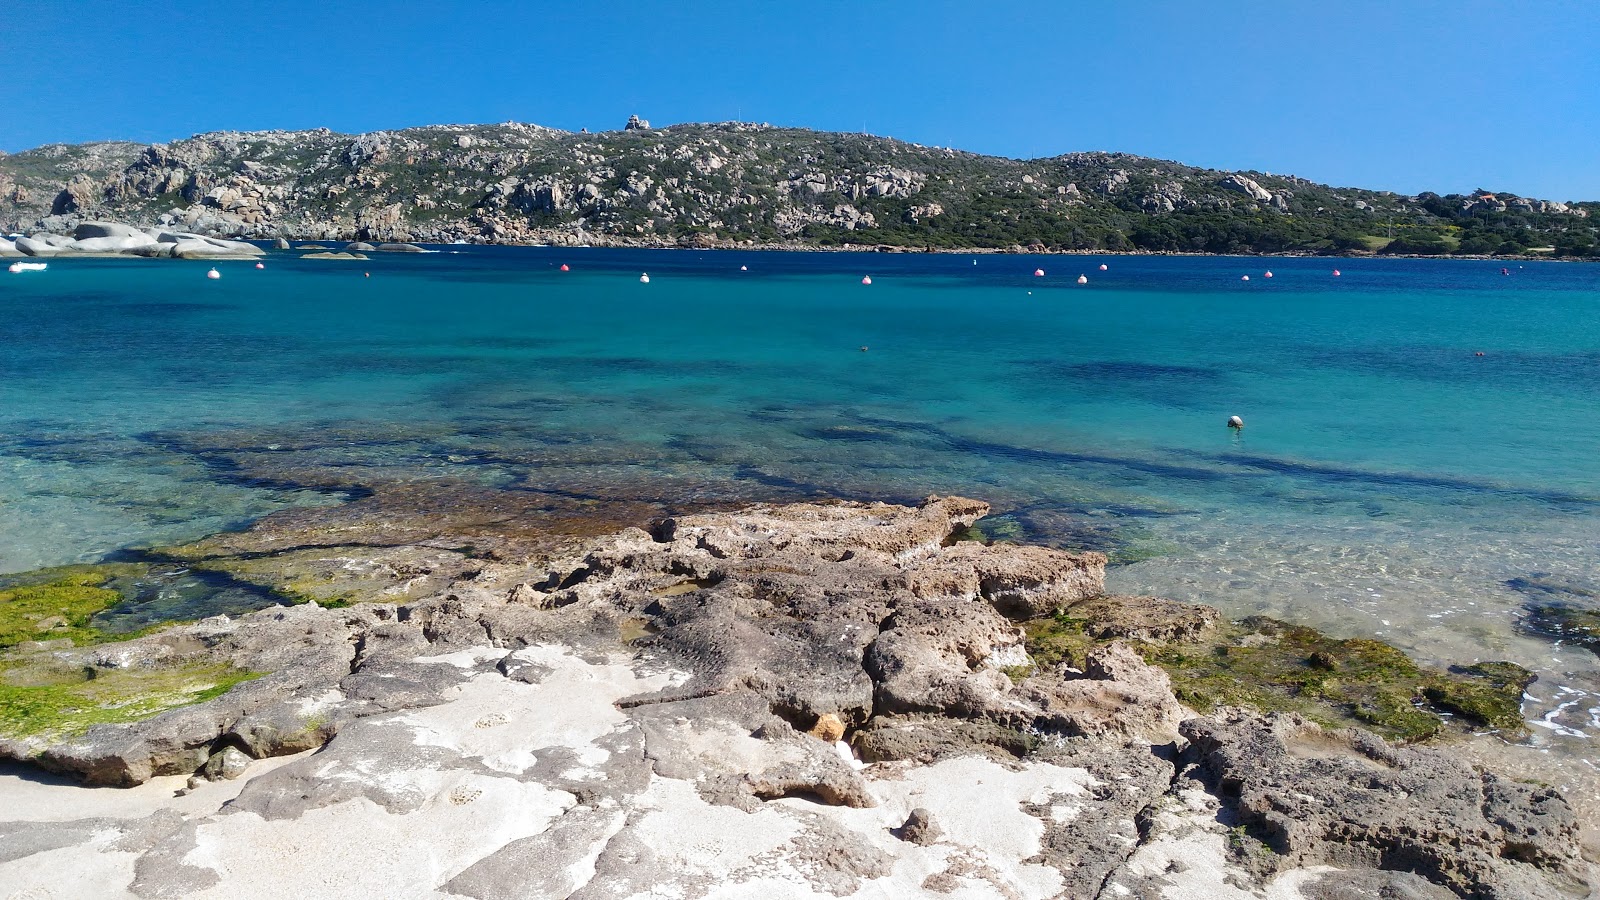 Photo of Spiaggia di Colonne Romane located in natural area